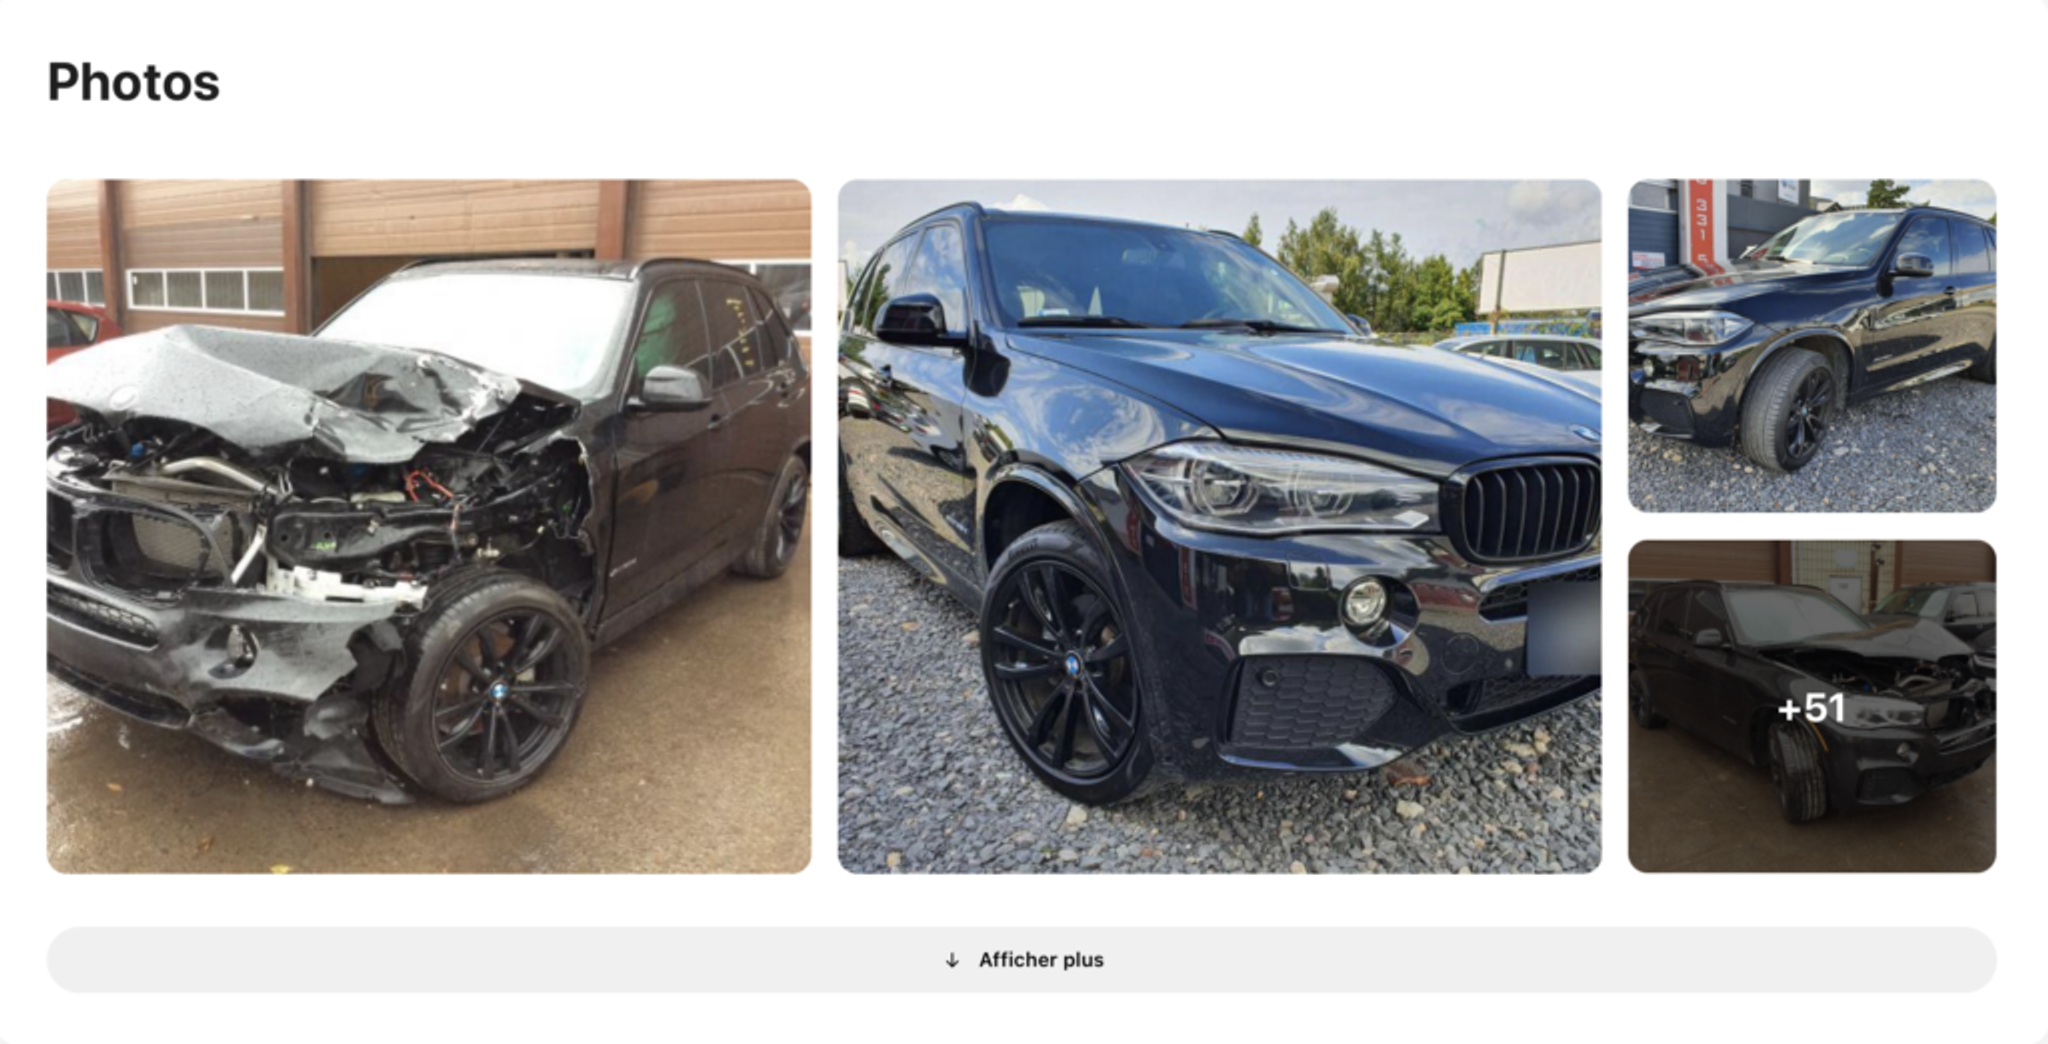 photos bmw après un accident trouvé dans une voitureVertical, voiture endommagée, véhicule brisé, voiture avant et après de graves réparations